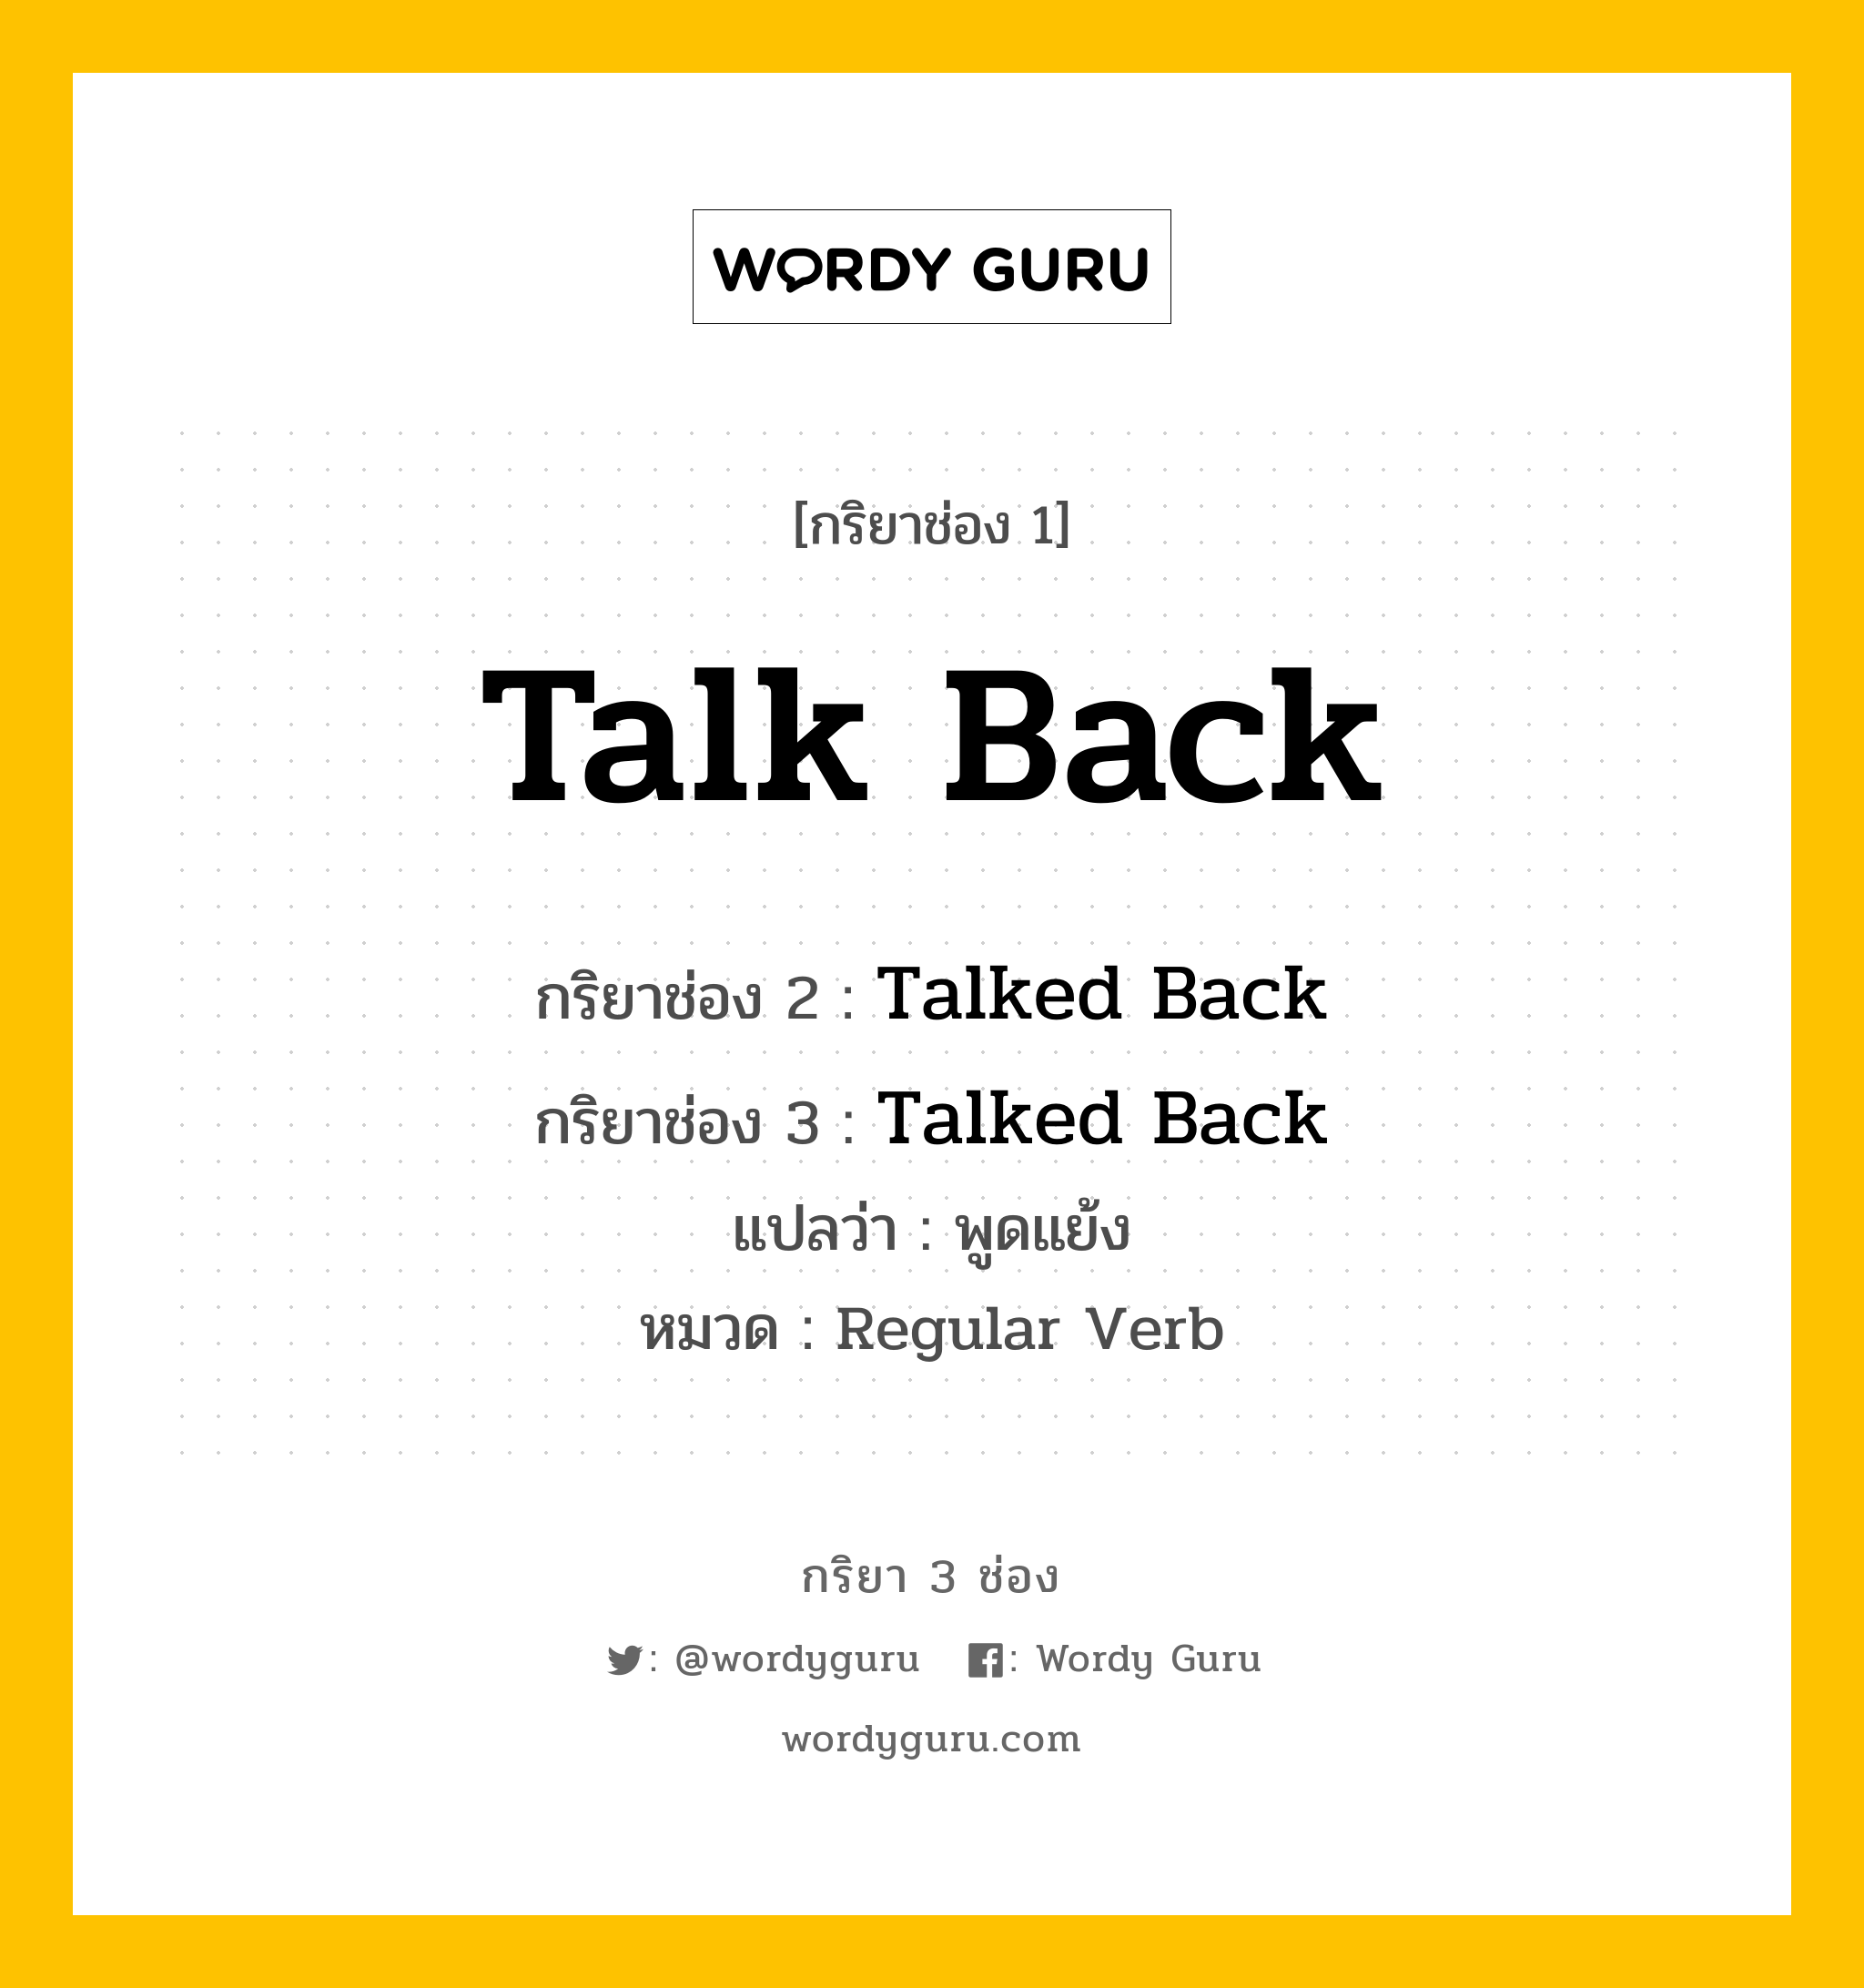 กริยา 3 ช่อง ของ Talk Back คืออะไร? มาดูคำอ่าน คำแปลกันเลย, กริยาช่อง 1 Talk Back กริยาช่อง 2 Talked Back กริยาช่อง 3 Talked Back แปลว่า พูดแย้ง หมวด Regular Verb หมวด Regular Verb